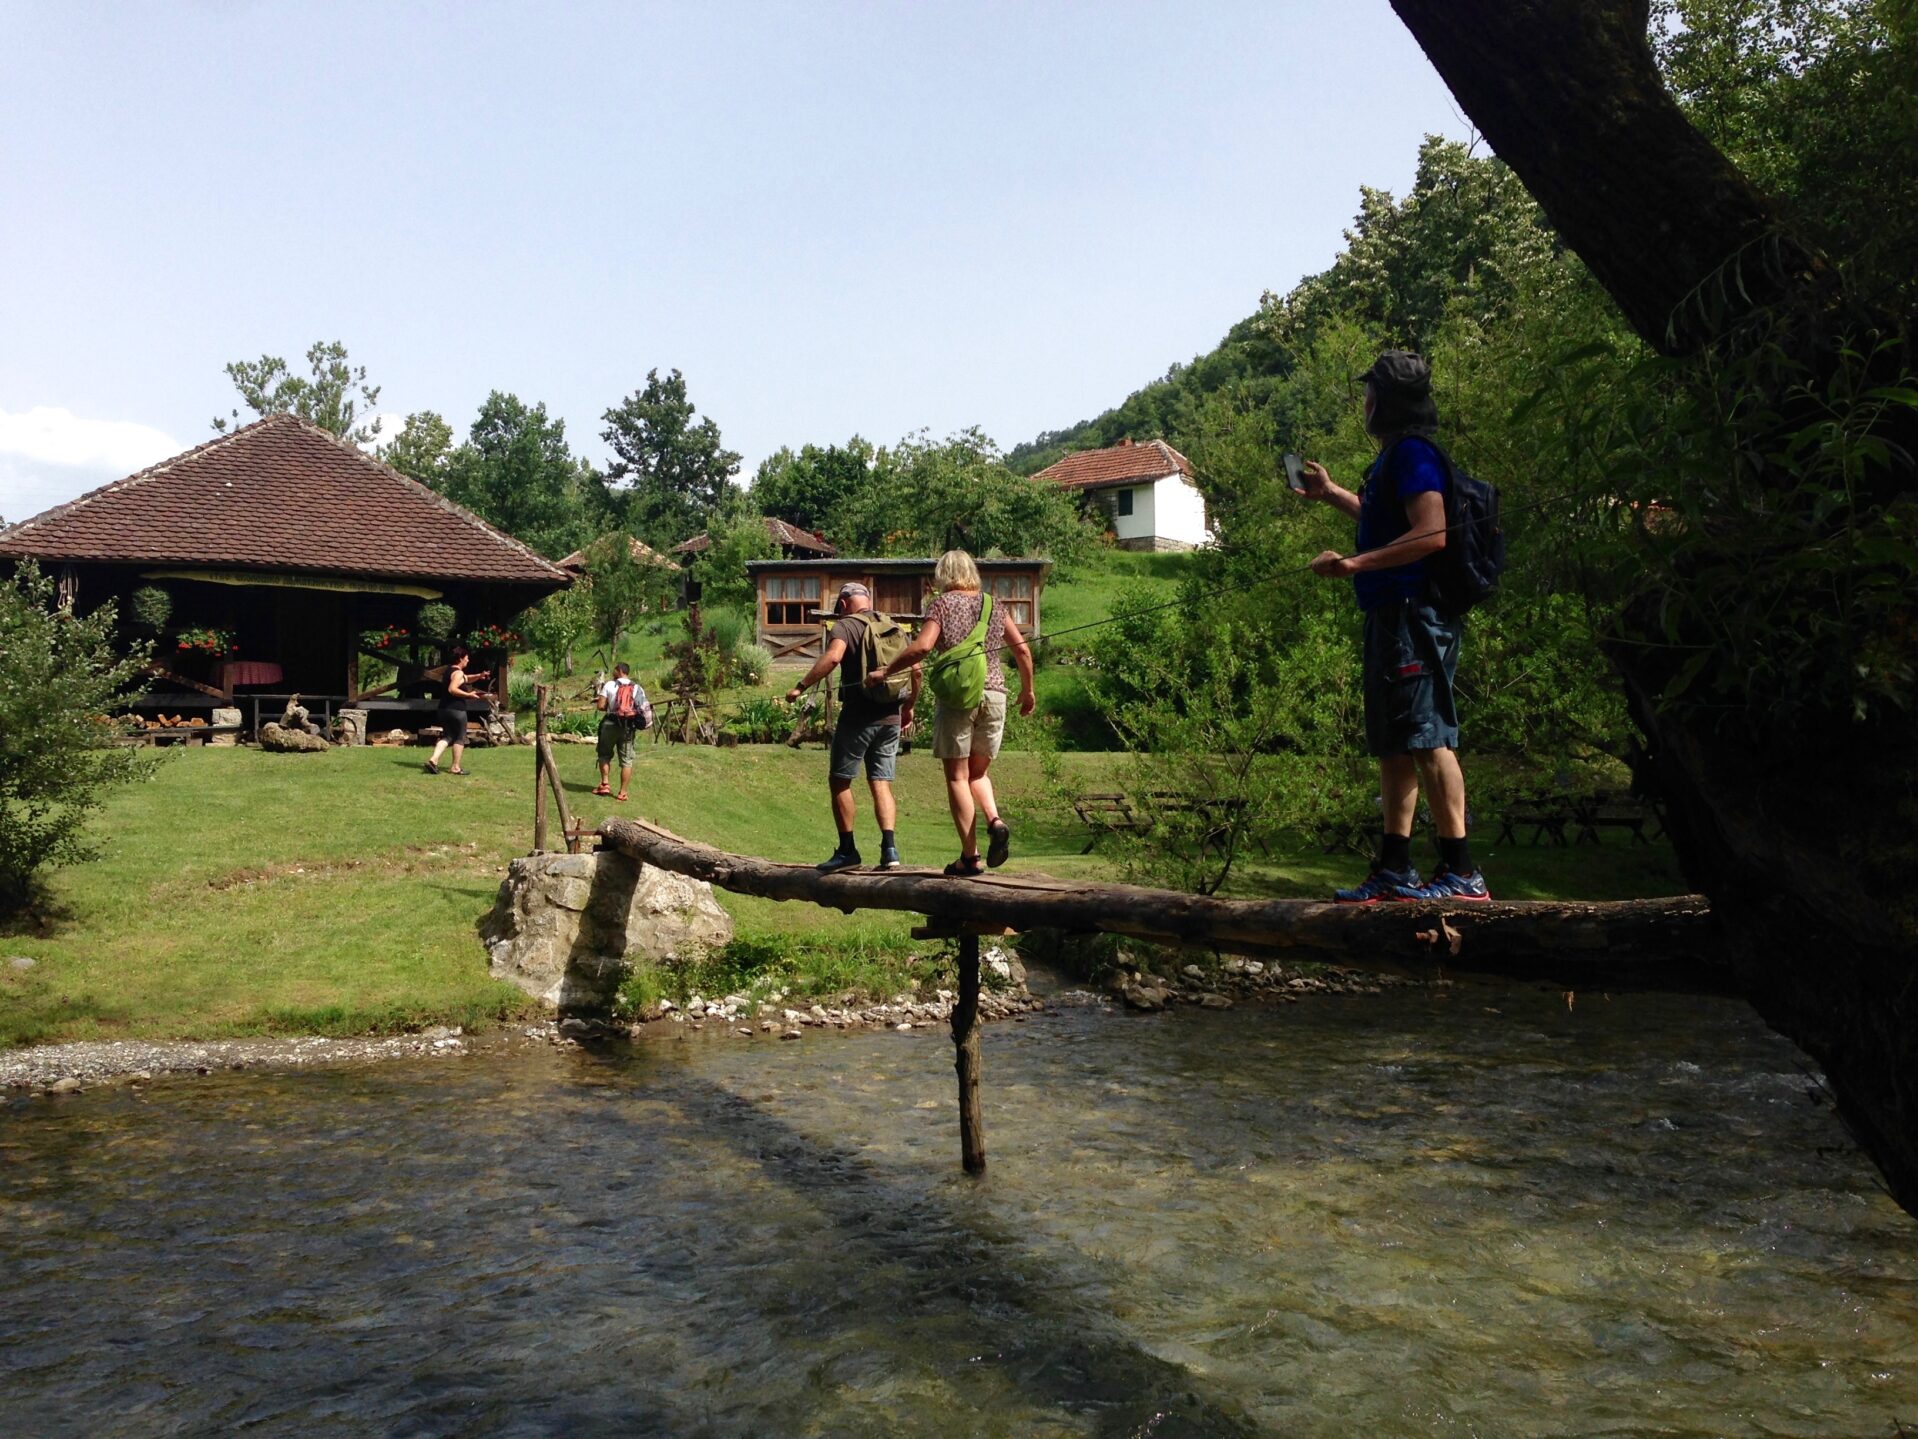 Servië reisinformatie voor jouw vakantie